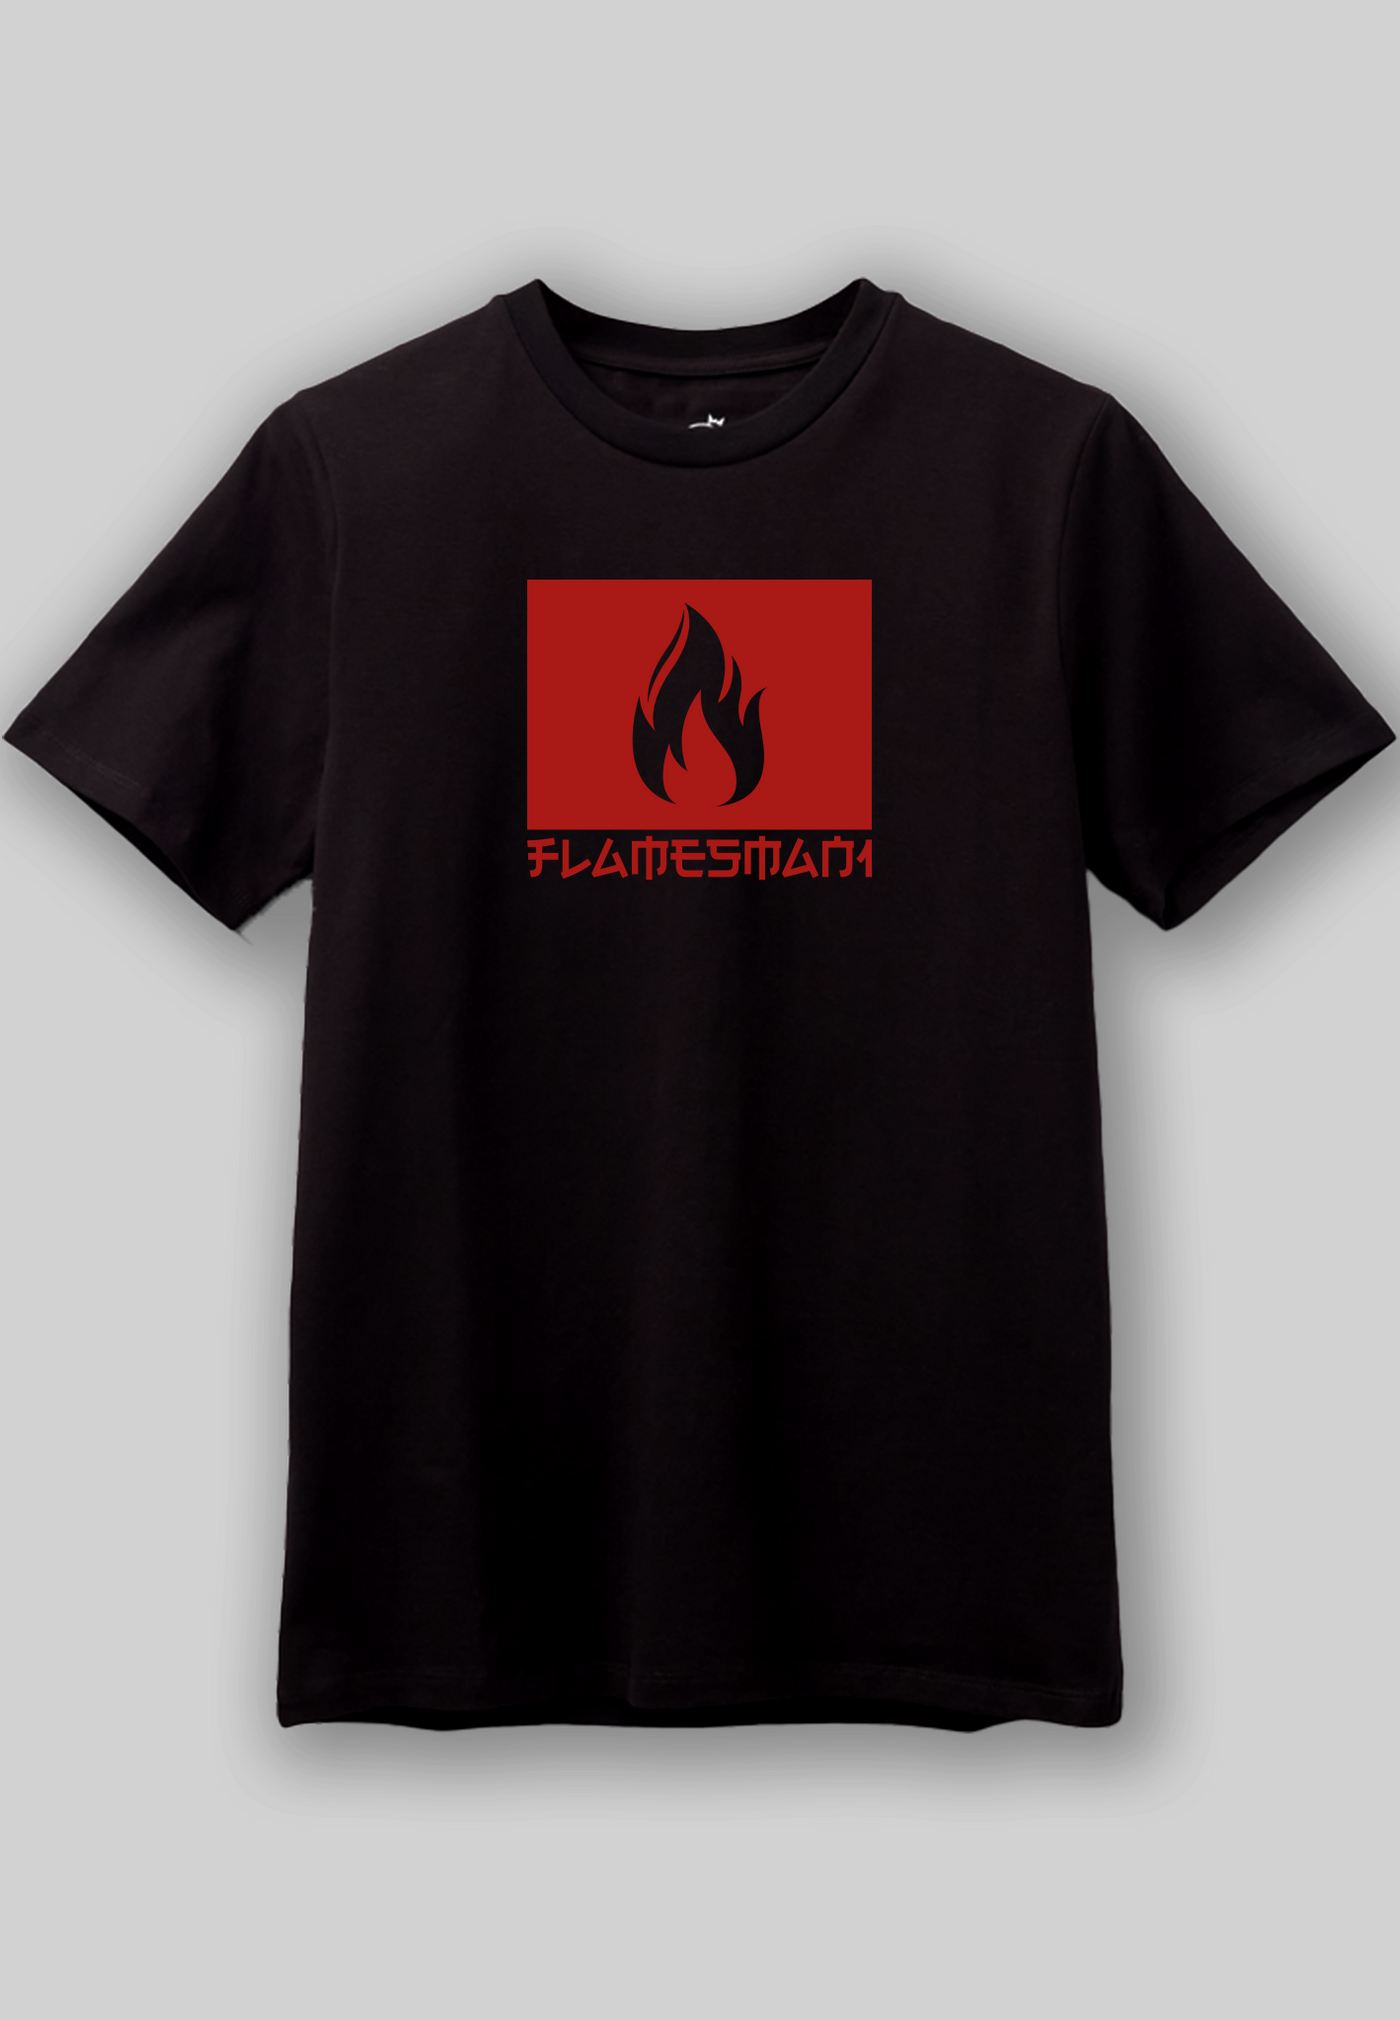 Flamesman1 - 2.0 Fire / Sort Tee